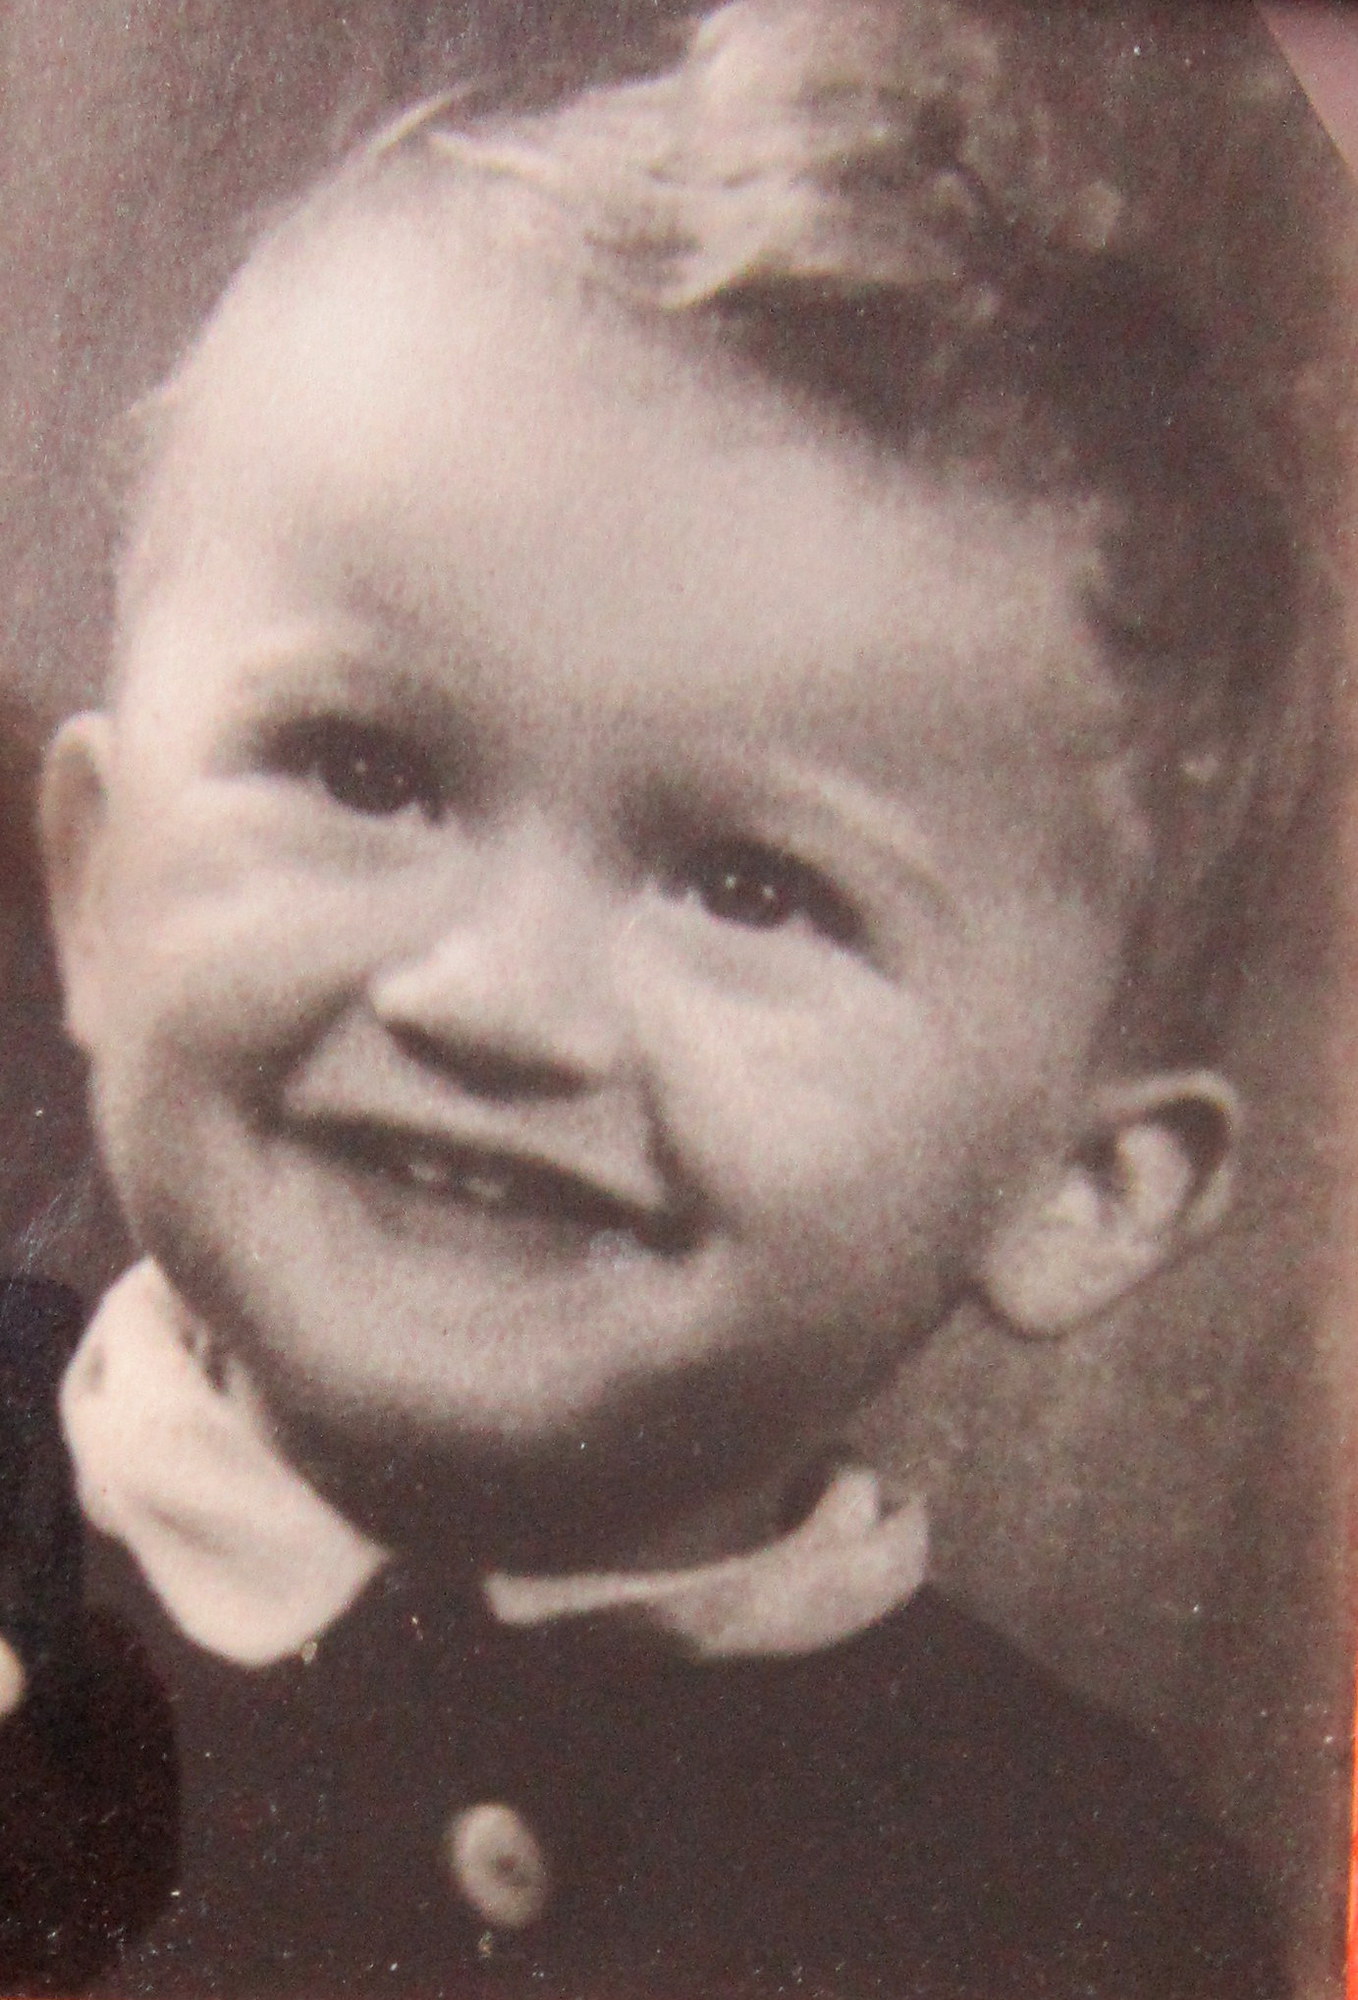 František Pachman v dětství